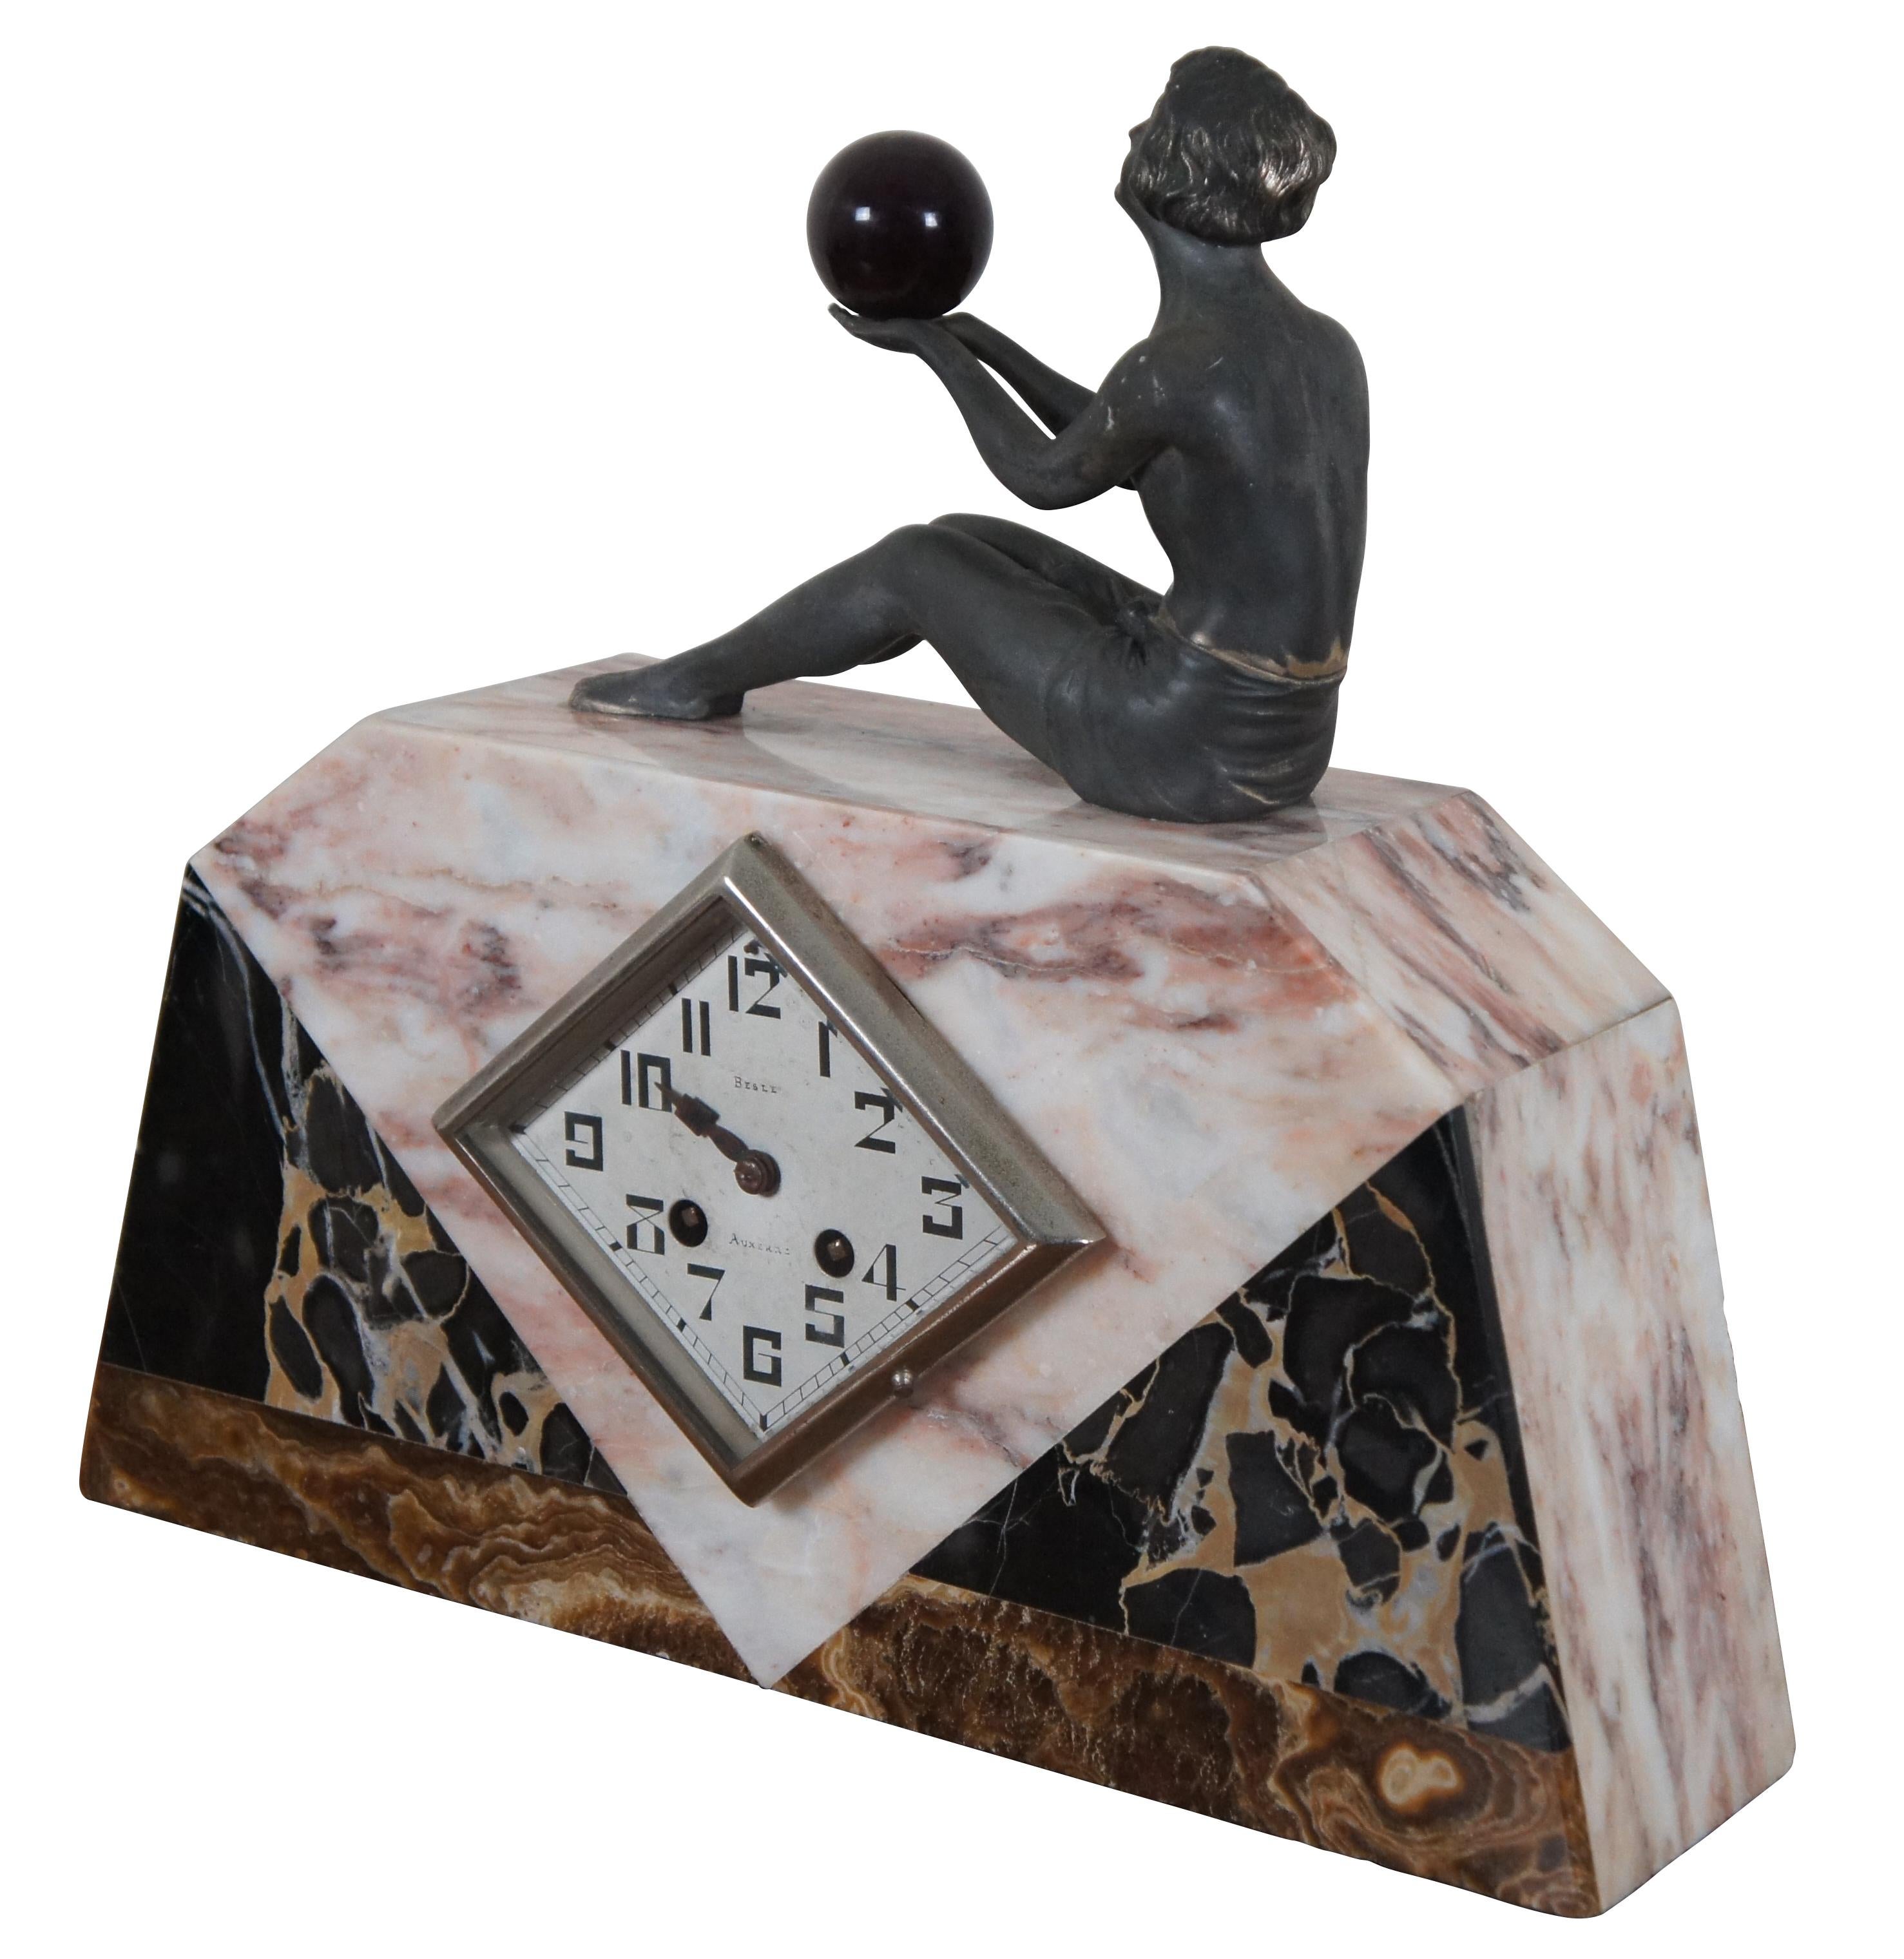 Antike Art Deco Uhr von Besle Auxerre, CIRCA 1920, aus verschiedenfarbigem Marmor mit rautenförmigem Zifferblatt und einer sitzenden weiblichen Bronzefigur, die eine tiefrote Kugel hält. Mit 153 gekennzeichnete Werke.